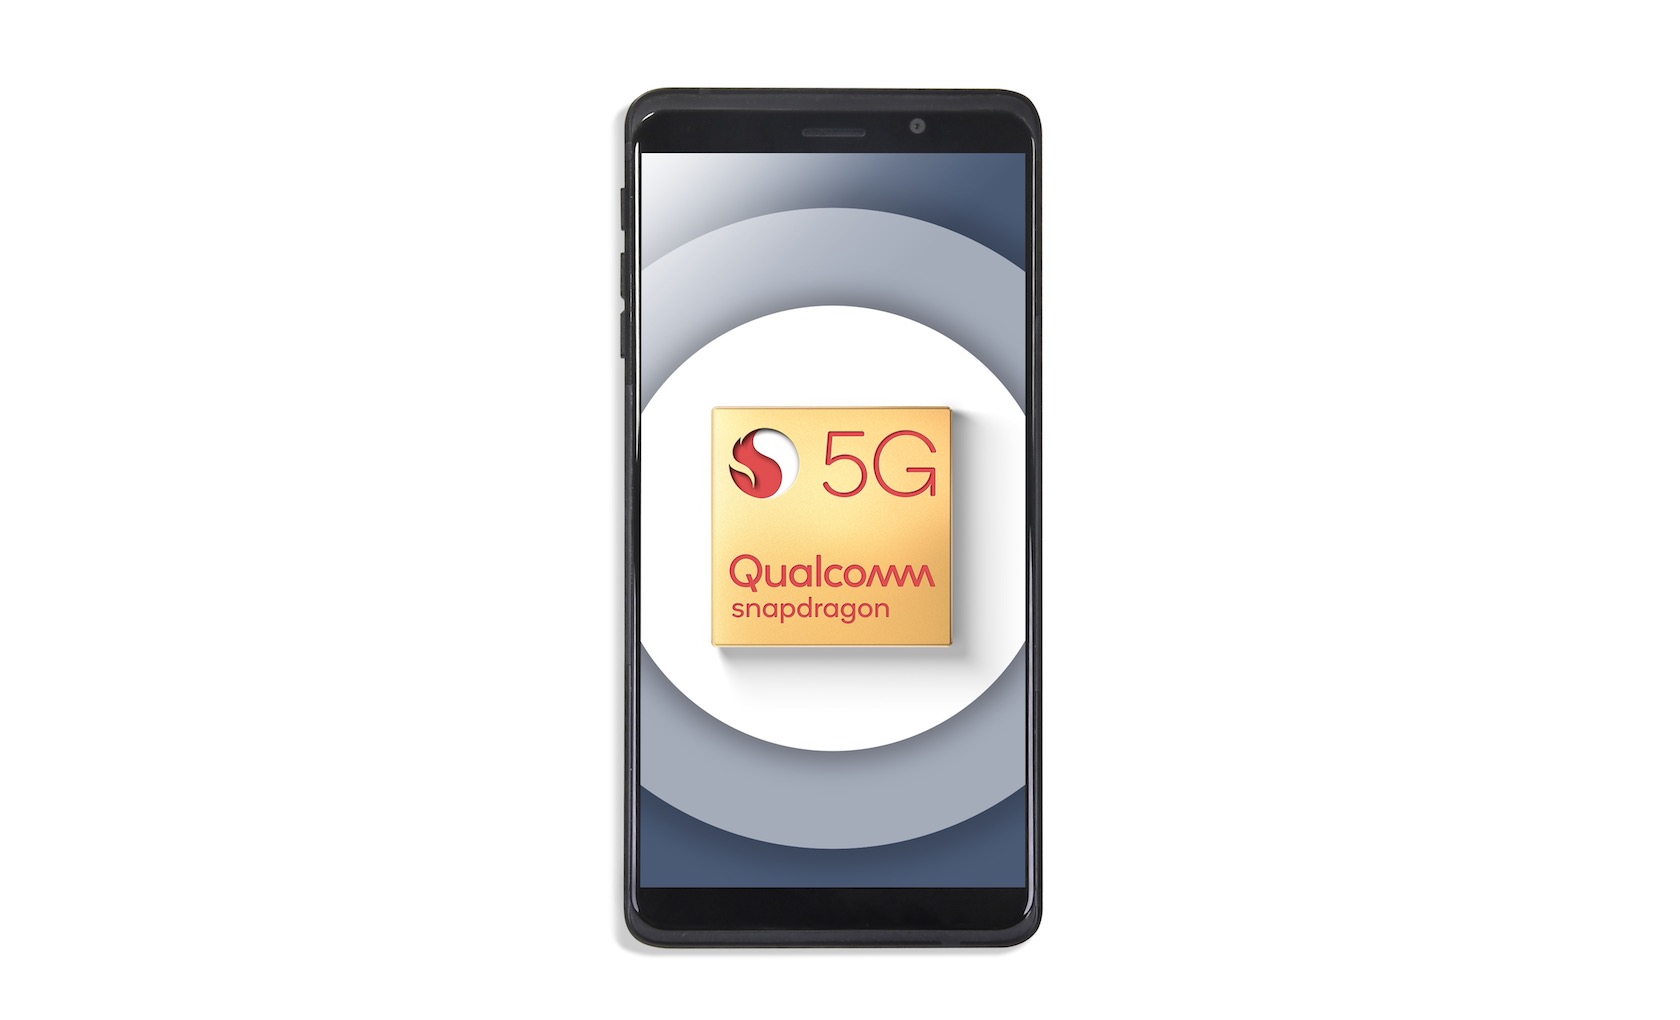 Qualcomm Snapdragon 5G Reference Design Gold Badge